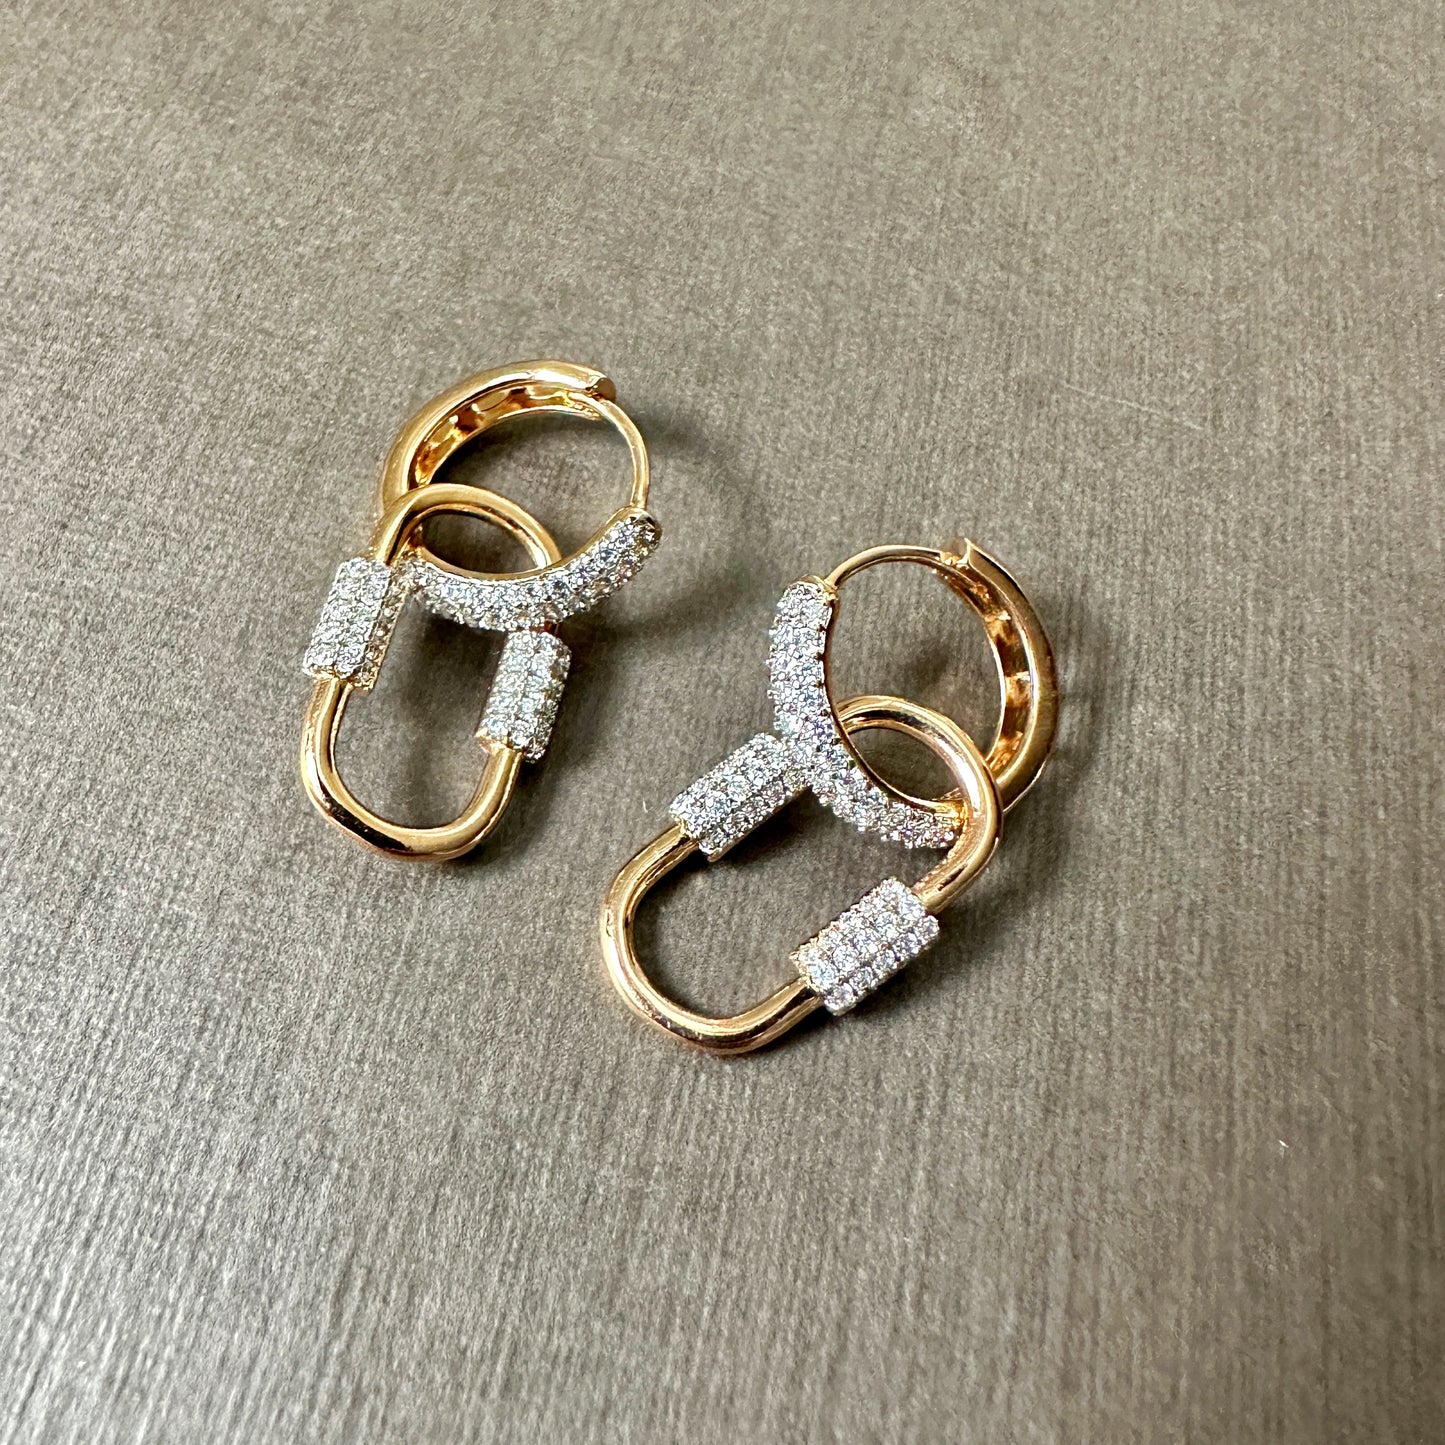 Detachable Chain Link Earrings